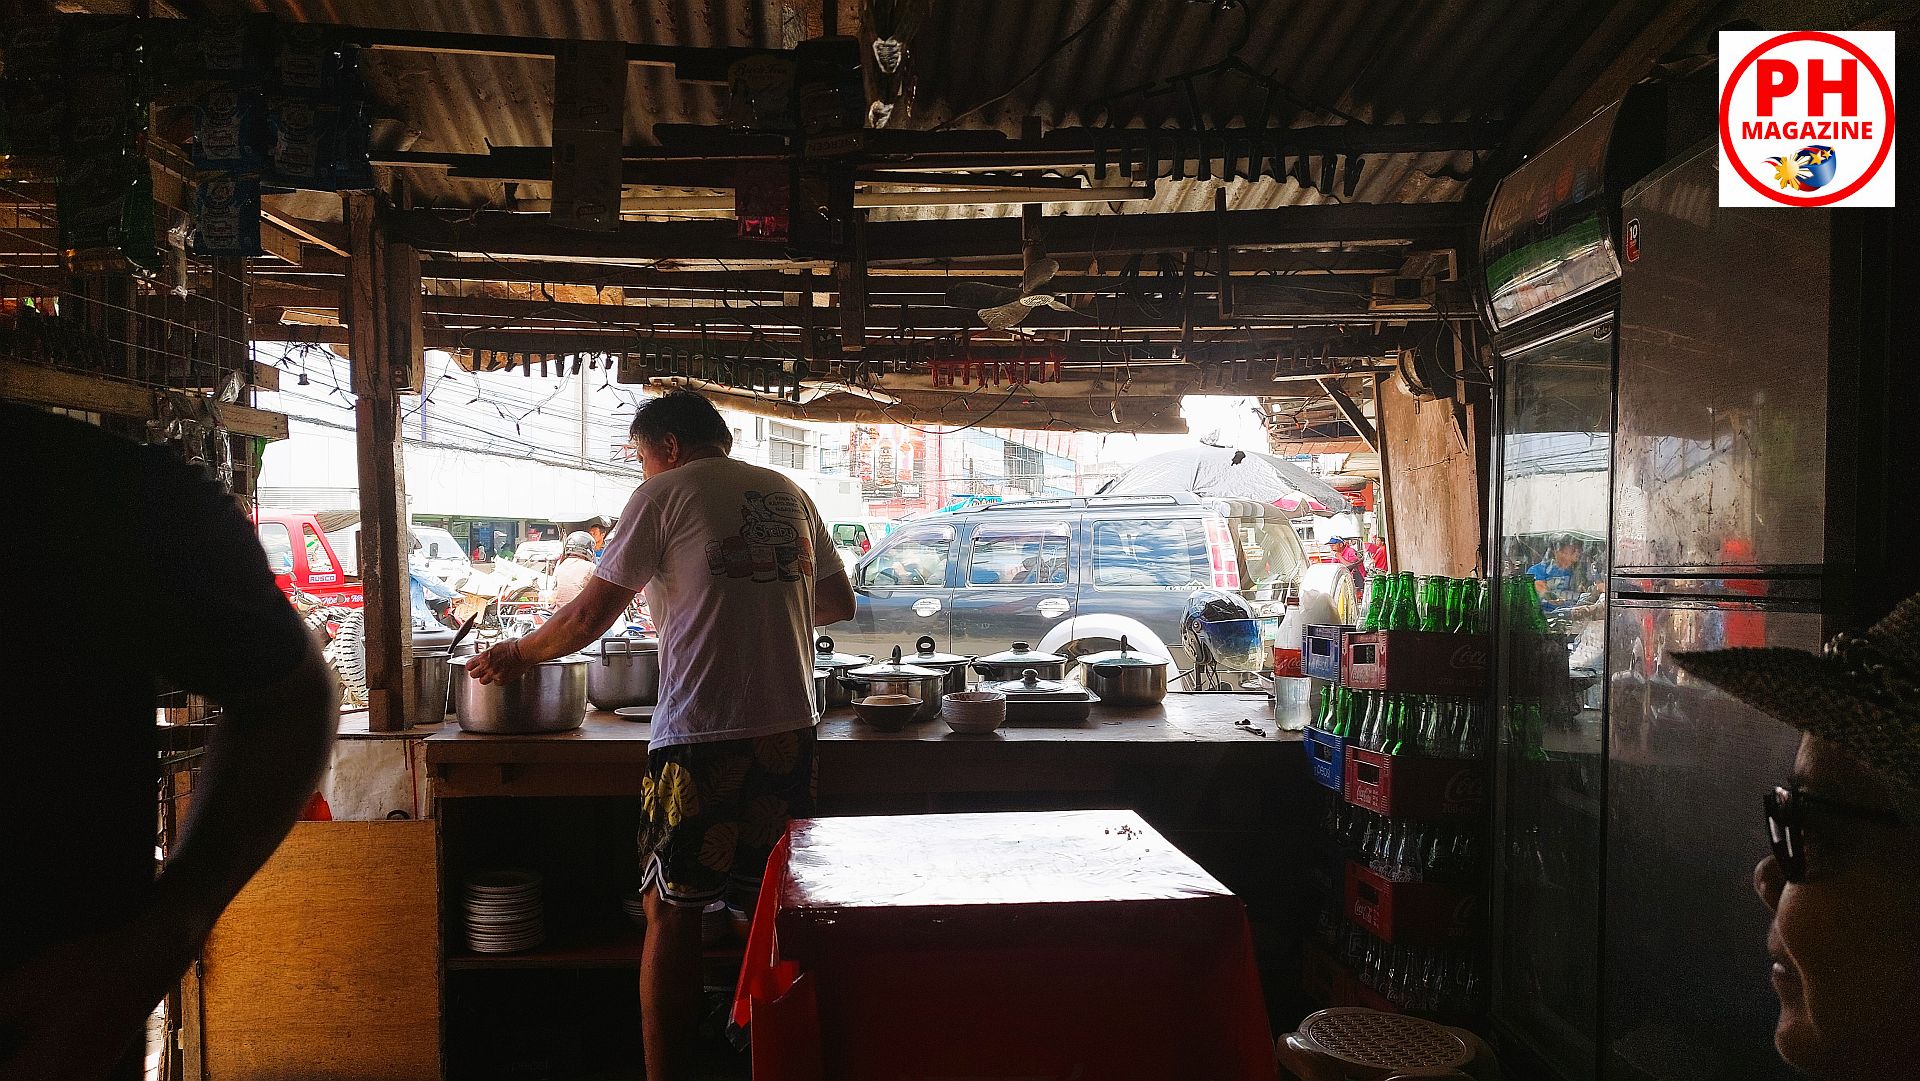 PHILIPPINEN MAGAZIN - FOTO DES TAGES - Blick aus einer Carinderia nach draußen